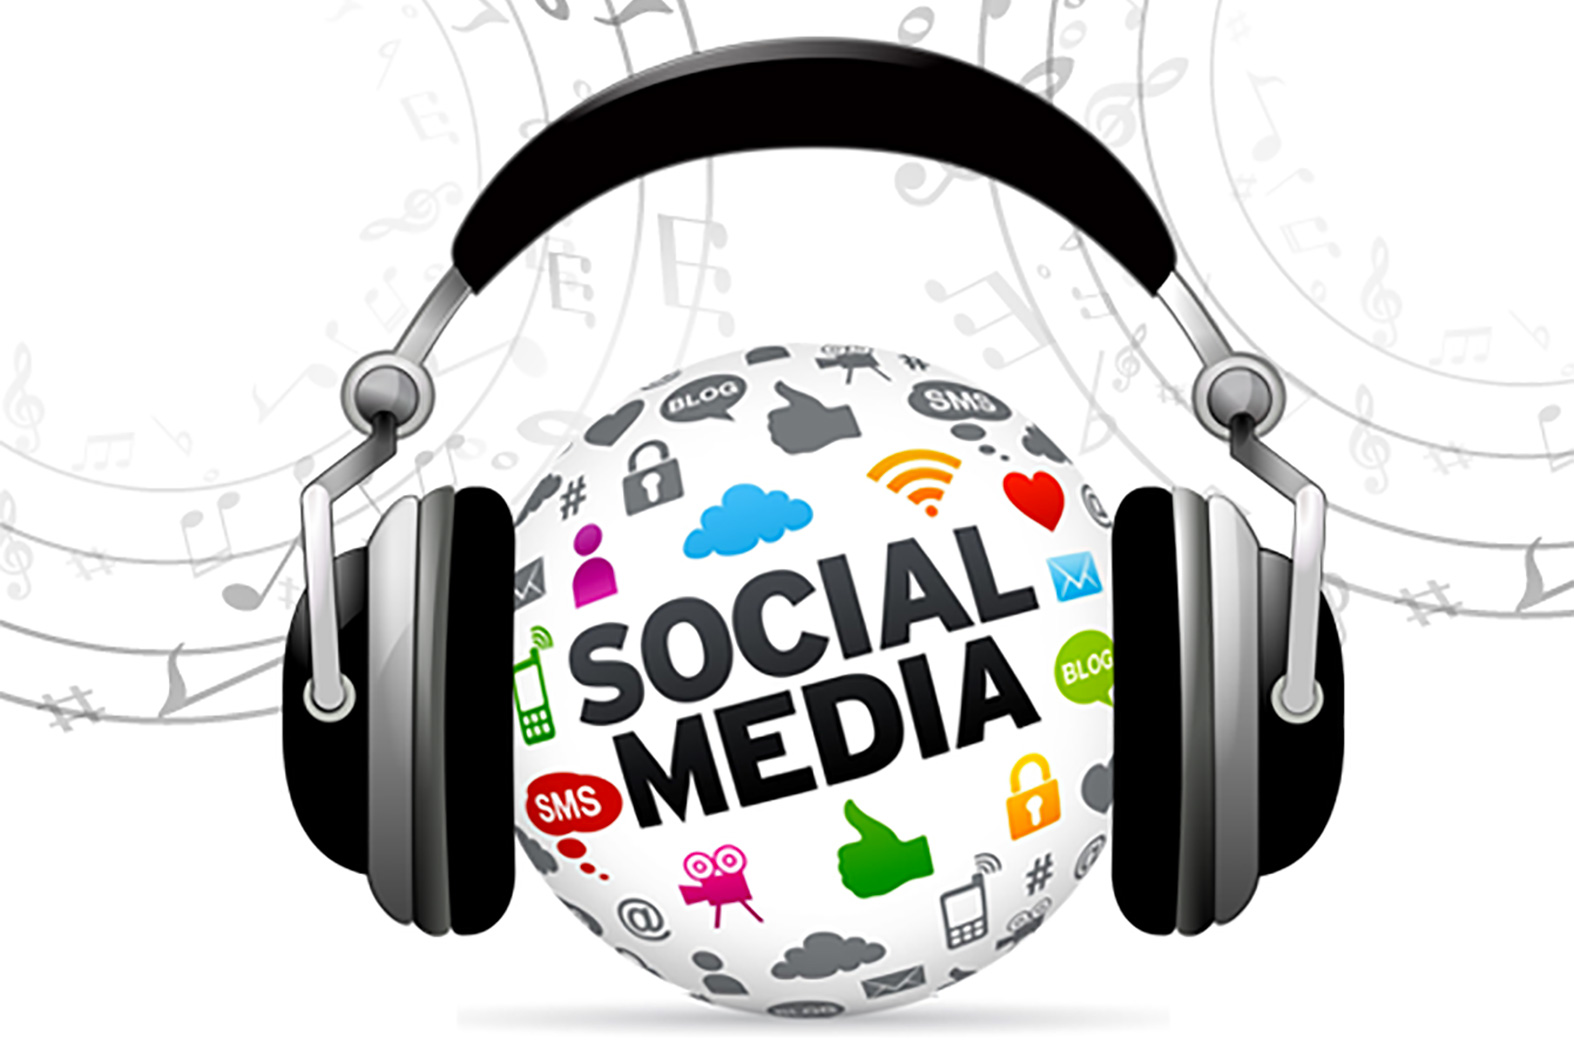 Social Media & music